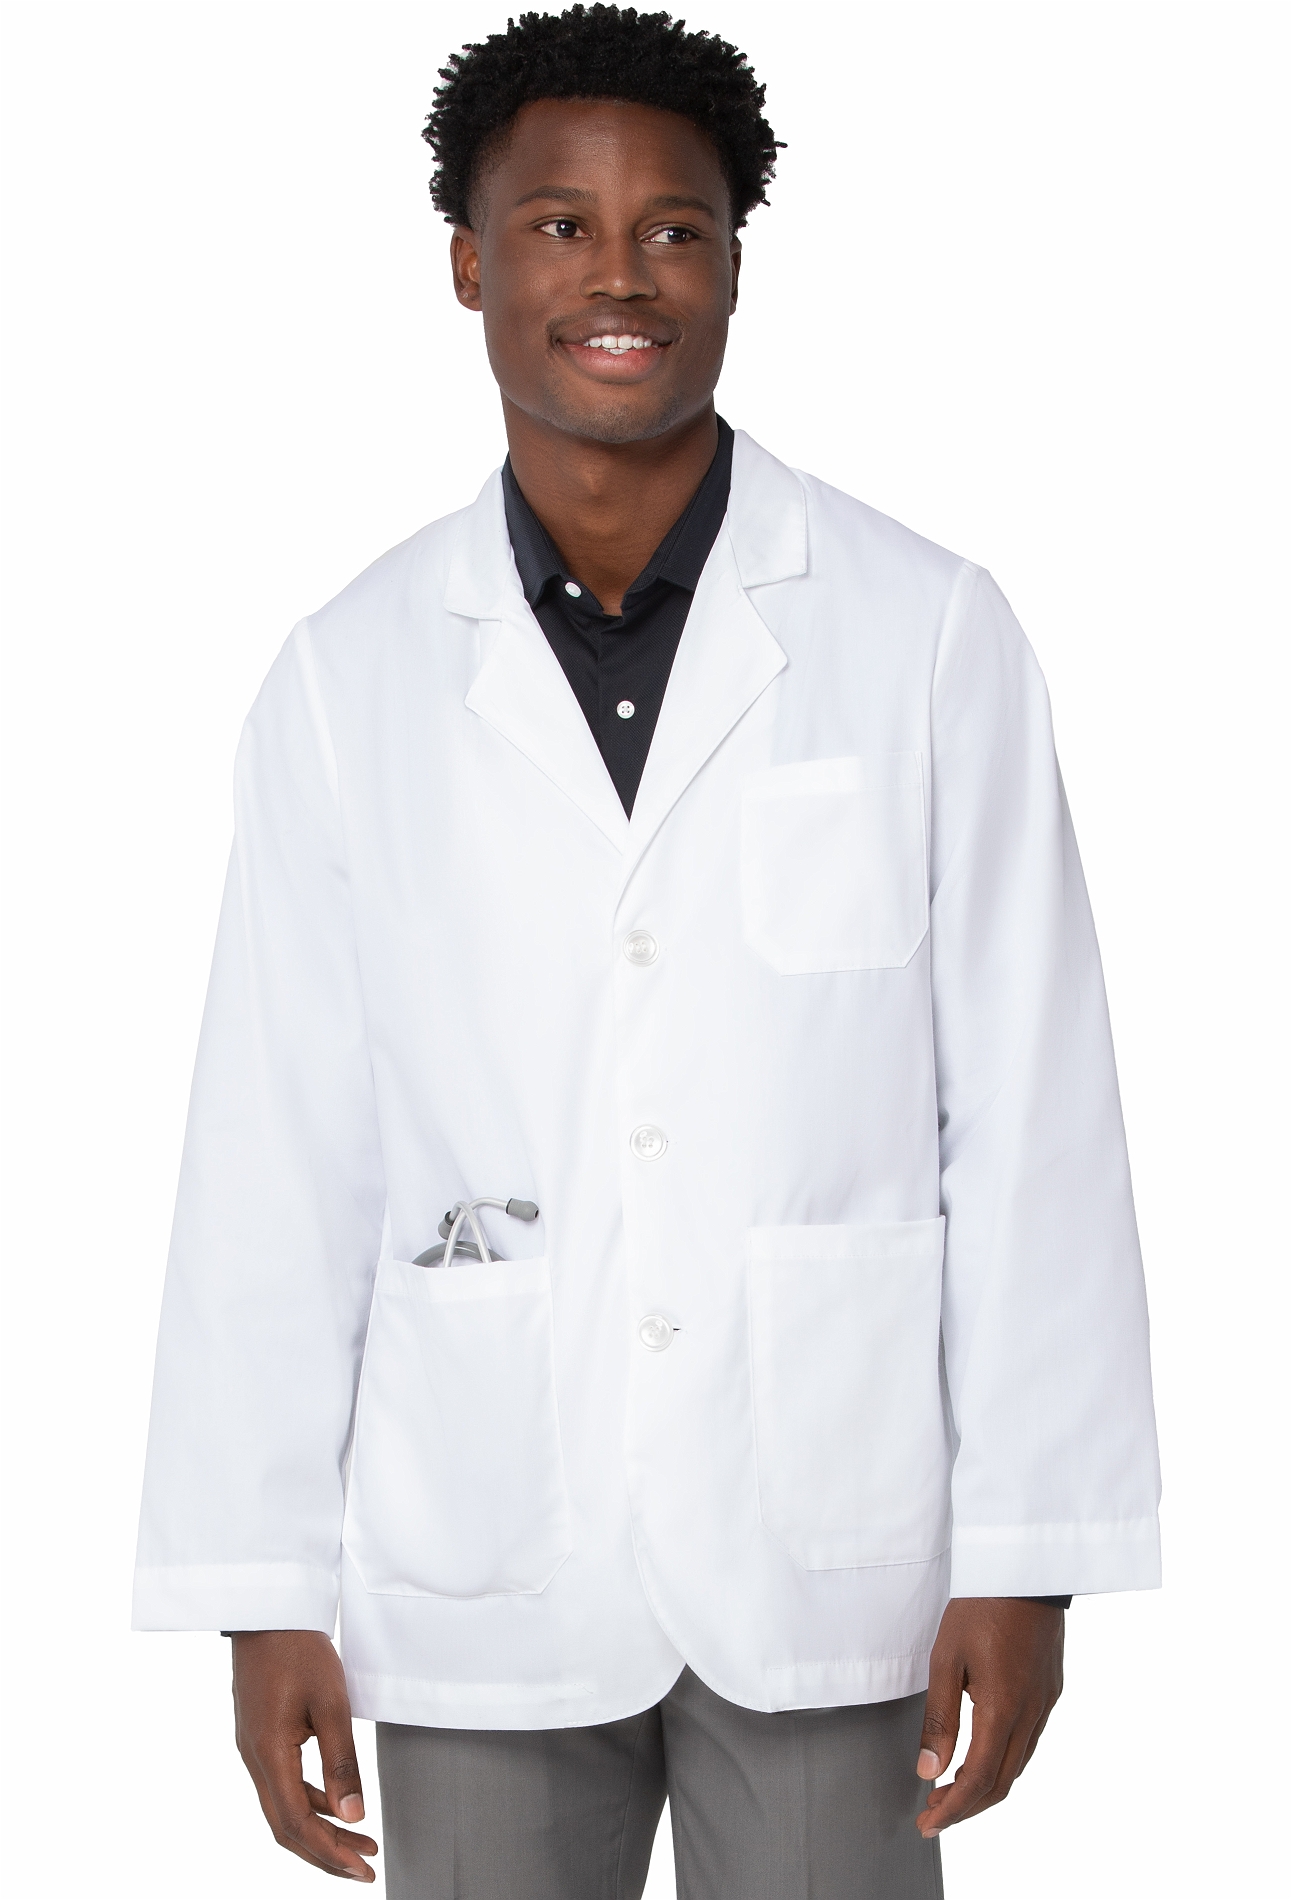 Landau Men's 30" White Lab Jacket-3224